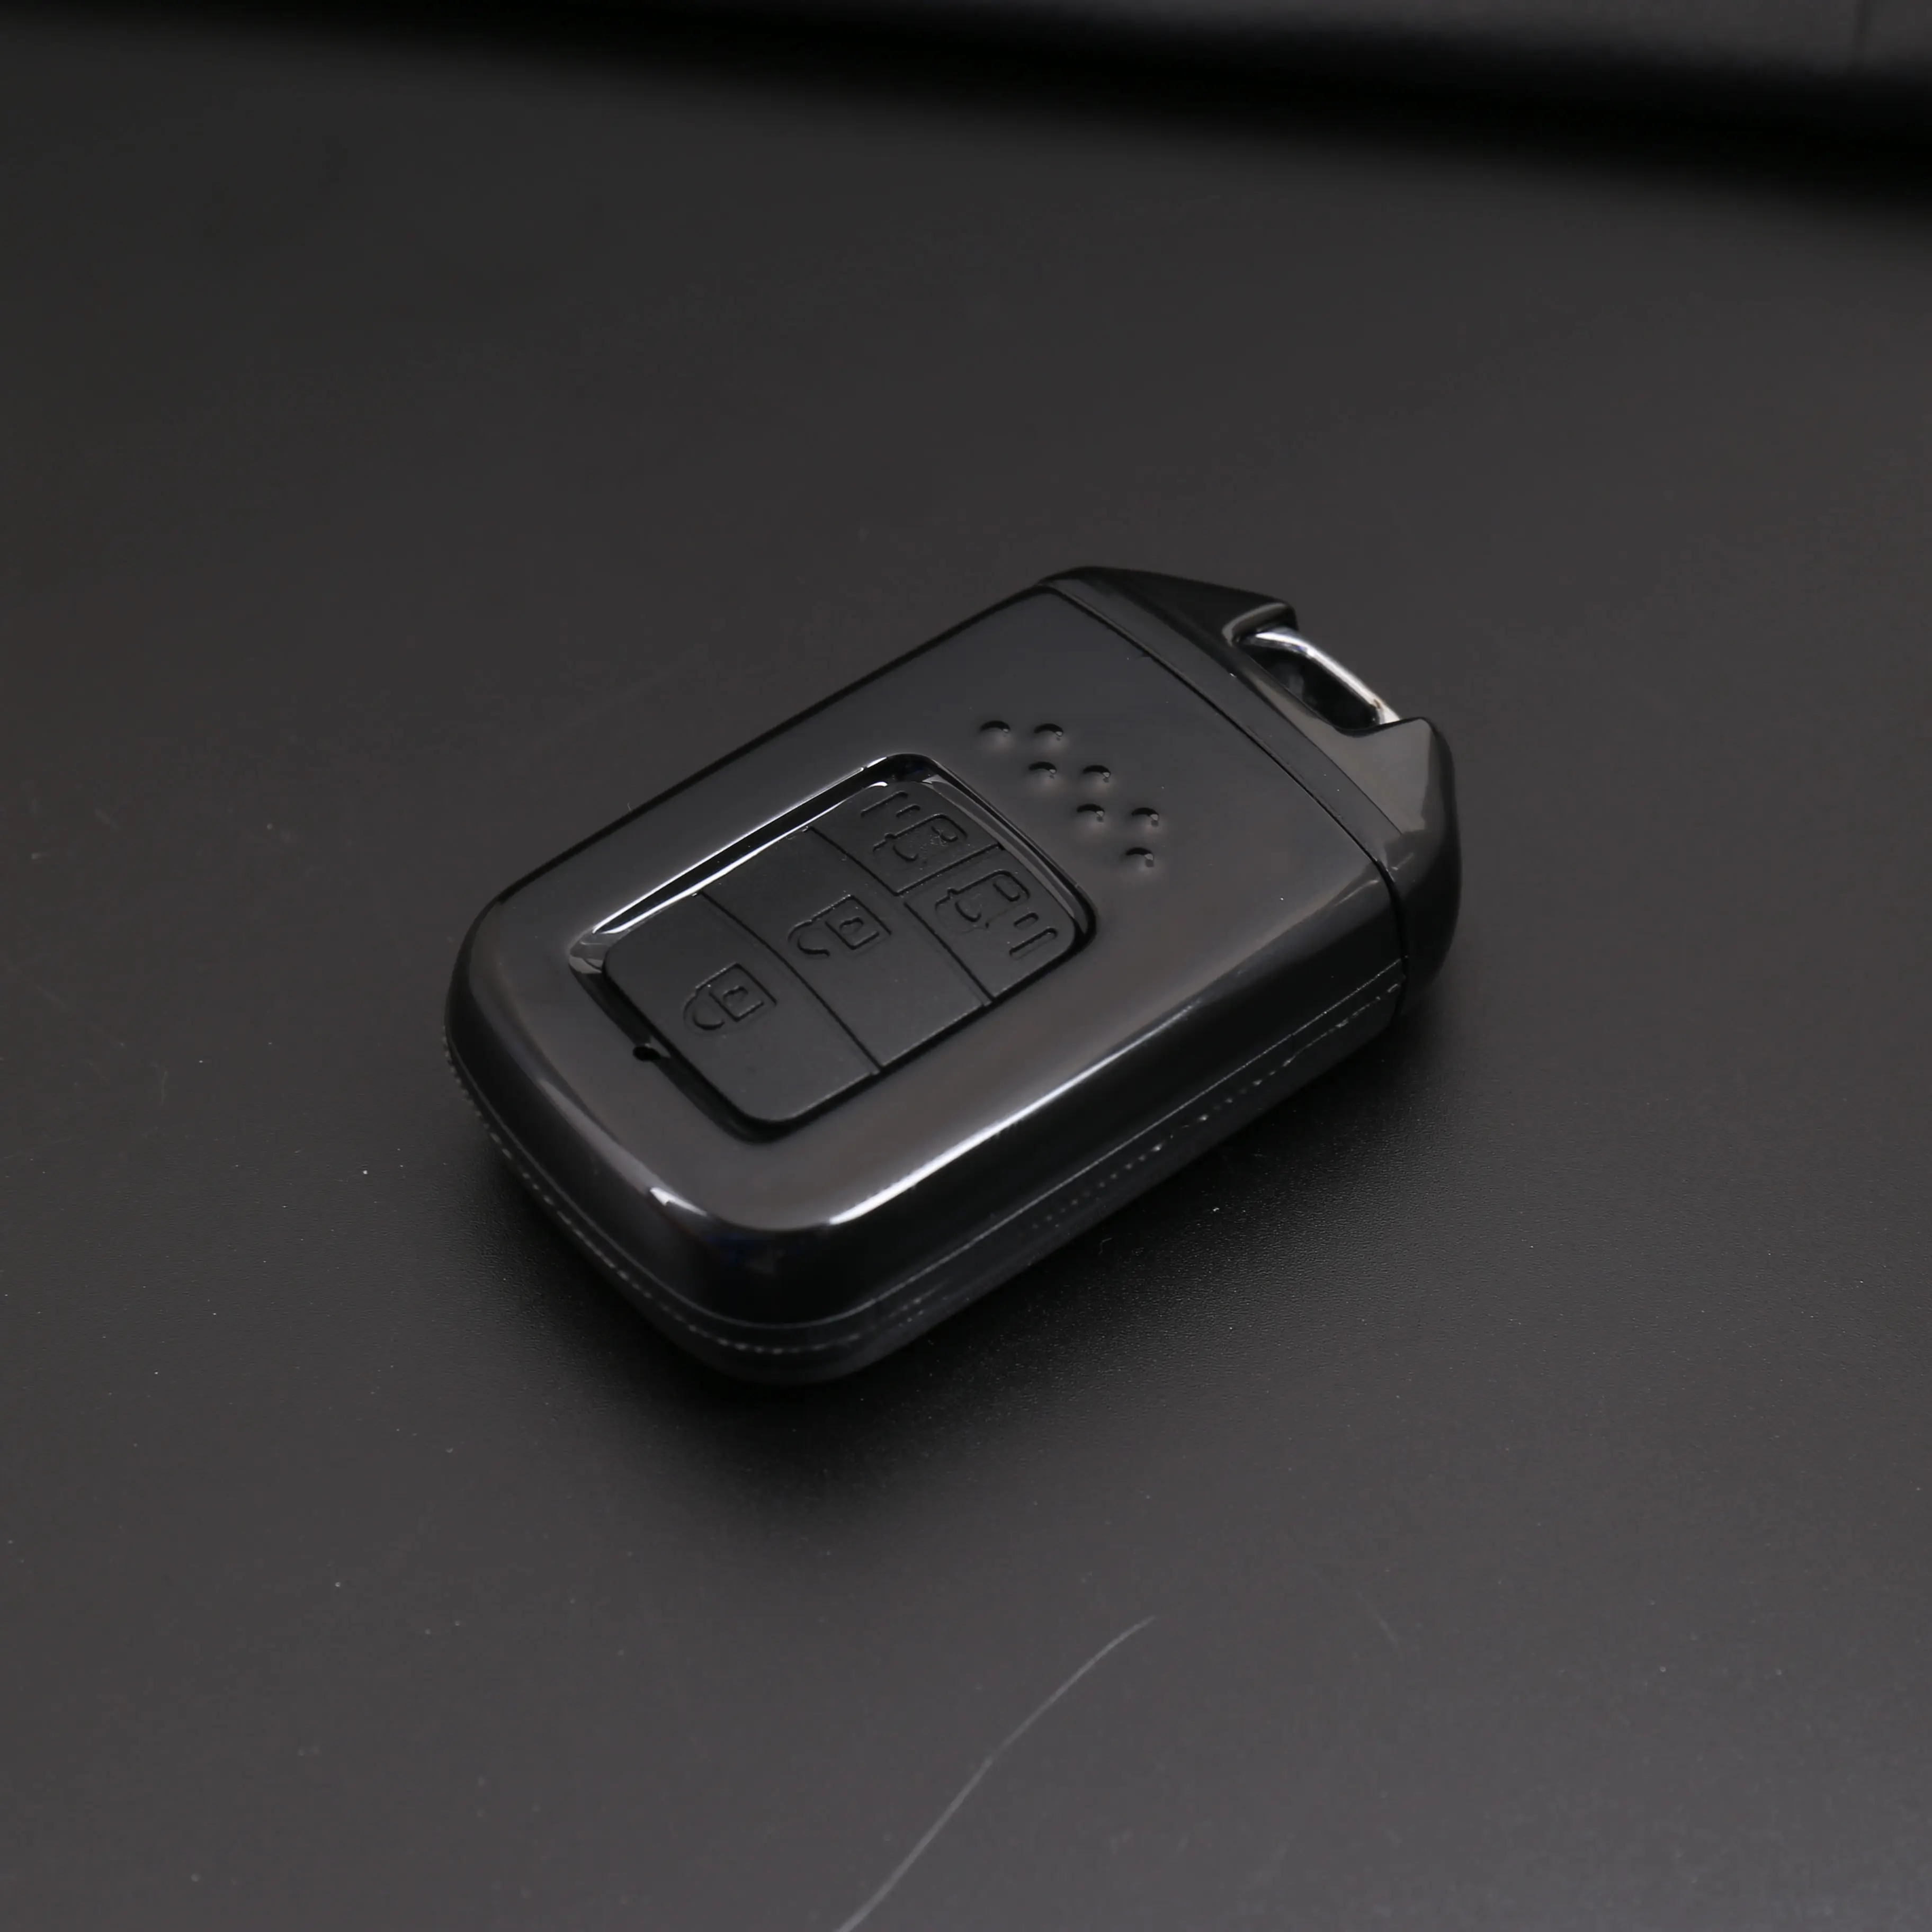 एबीएस कार कुंजी कवर गाड़ी की चाबी एफओबी कवर कुंजी मामले के लिए होंडा के लिए 2/3/4 बटन